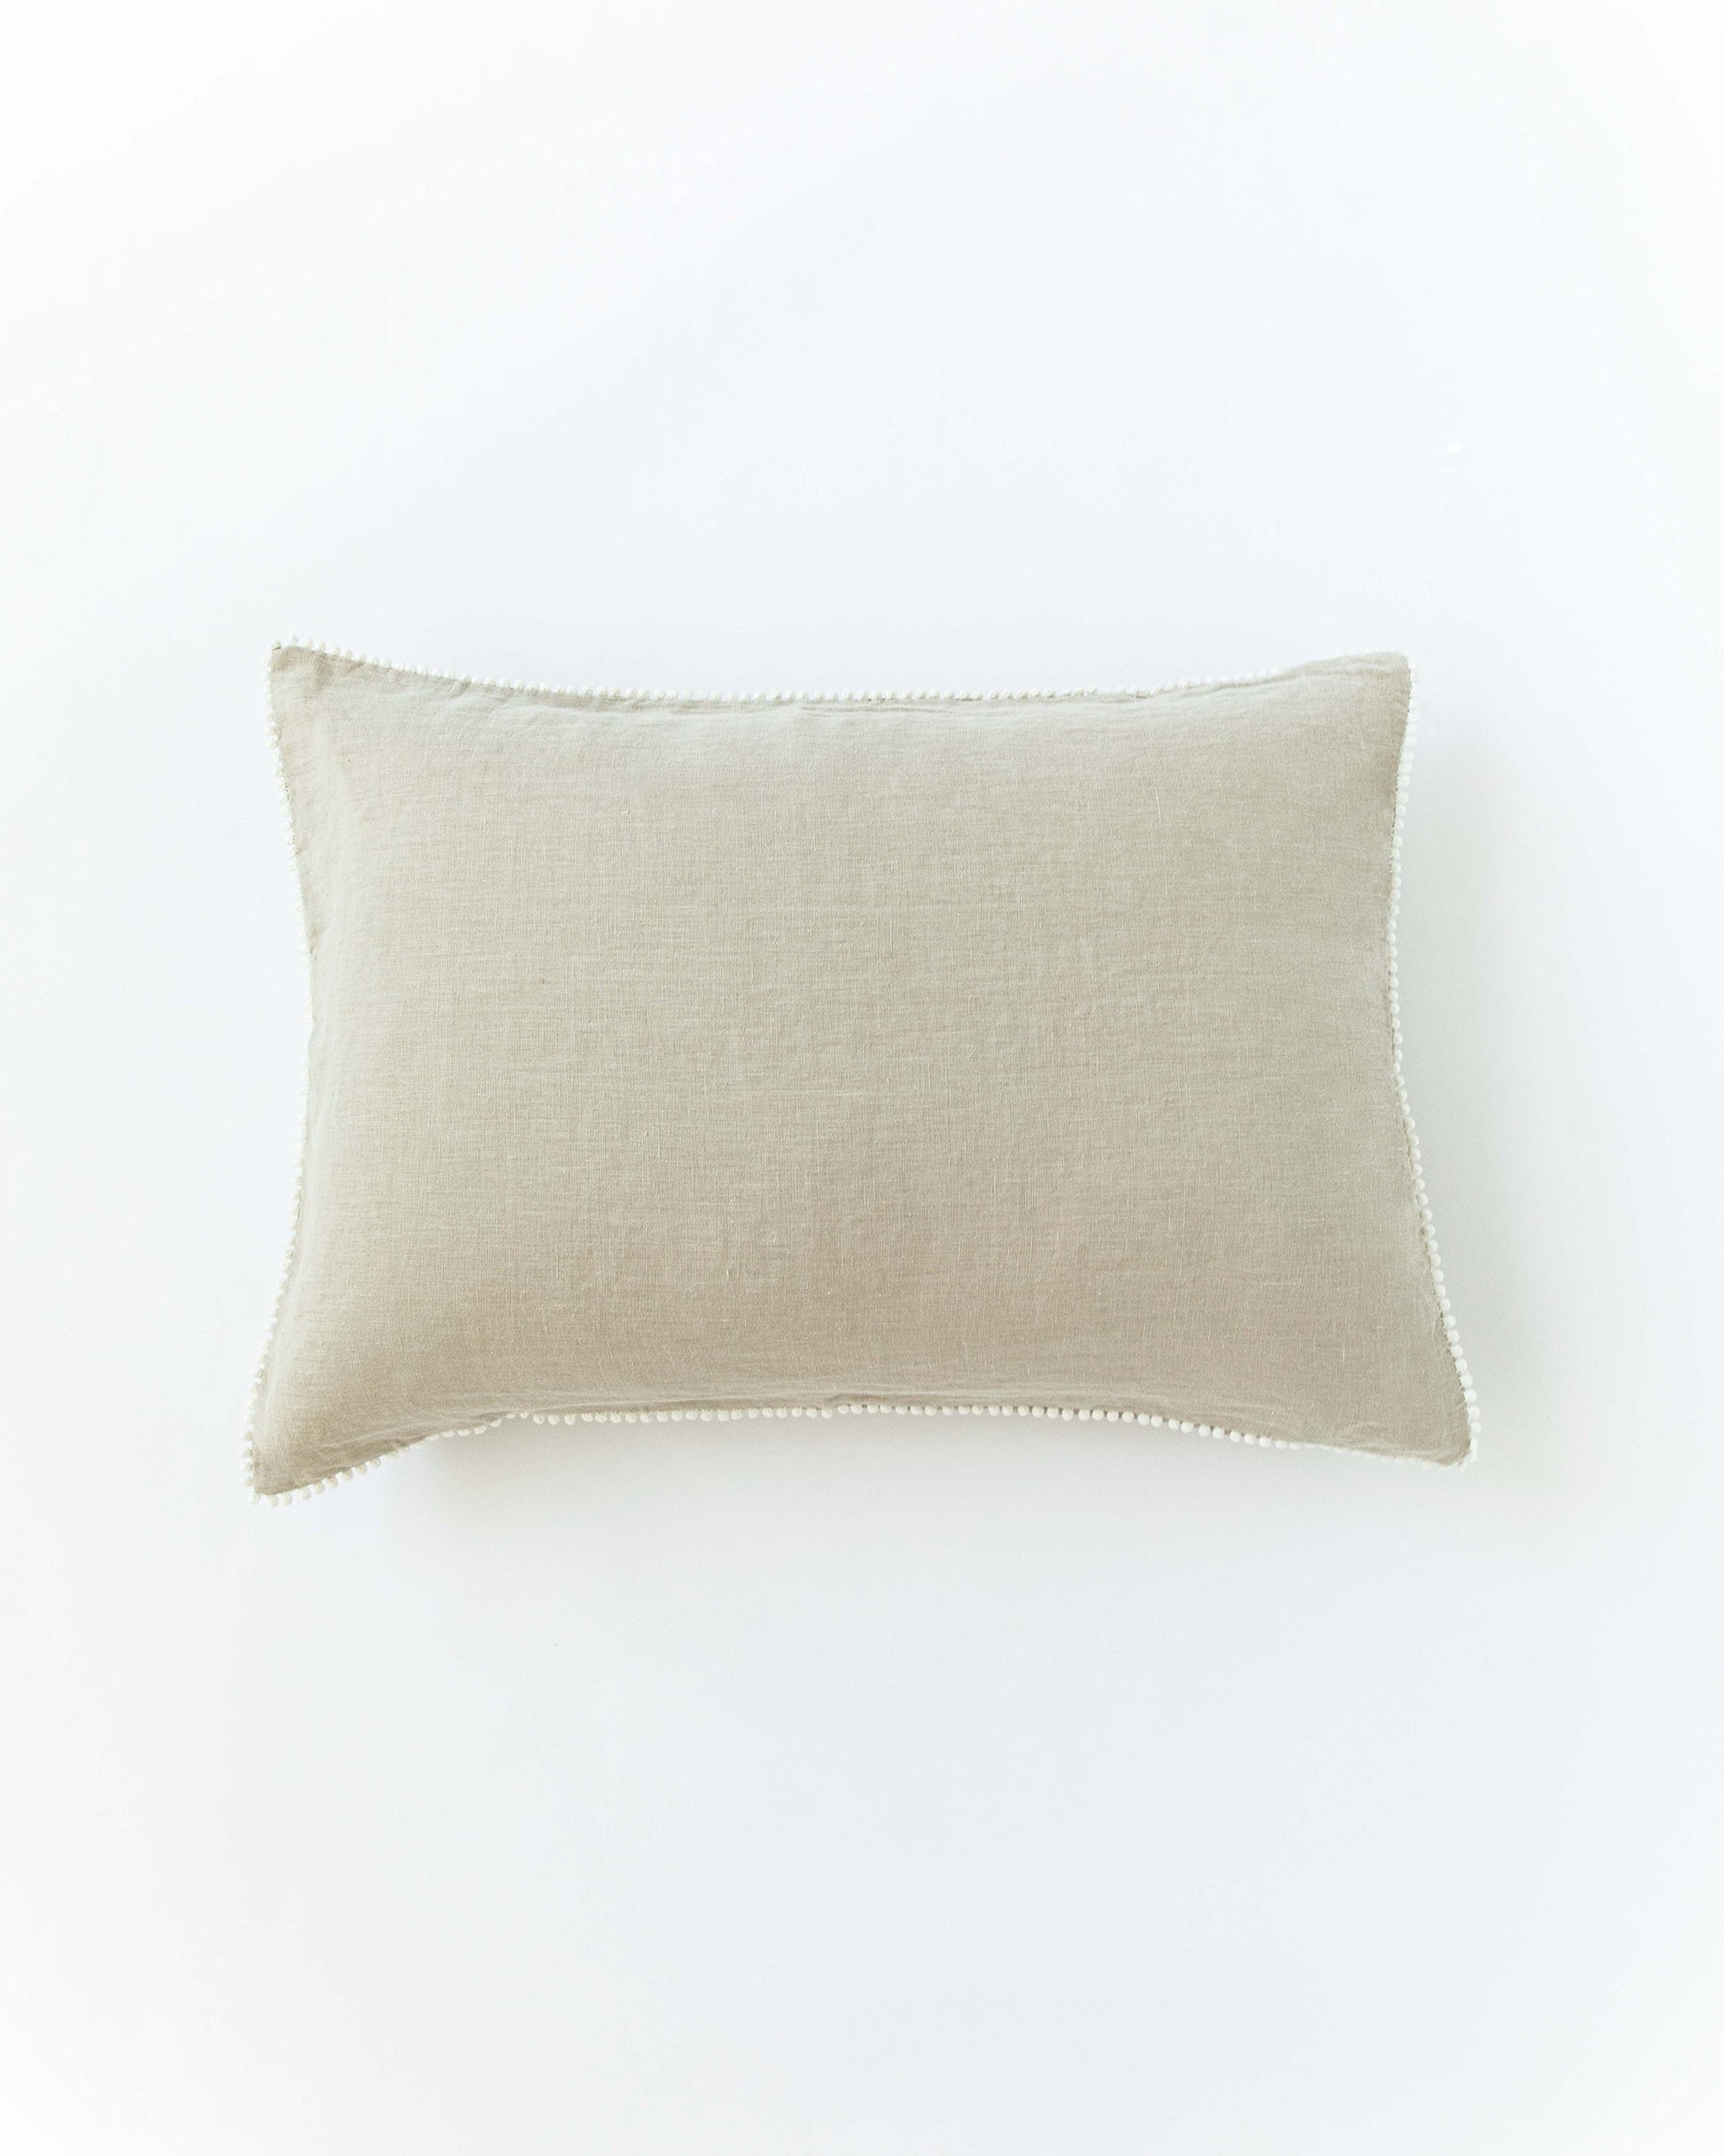 Pom pom trim linen pillowcase in Natural linen - MagicLinen